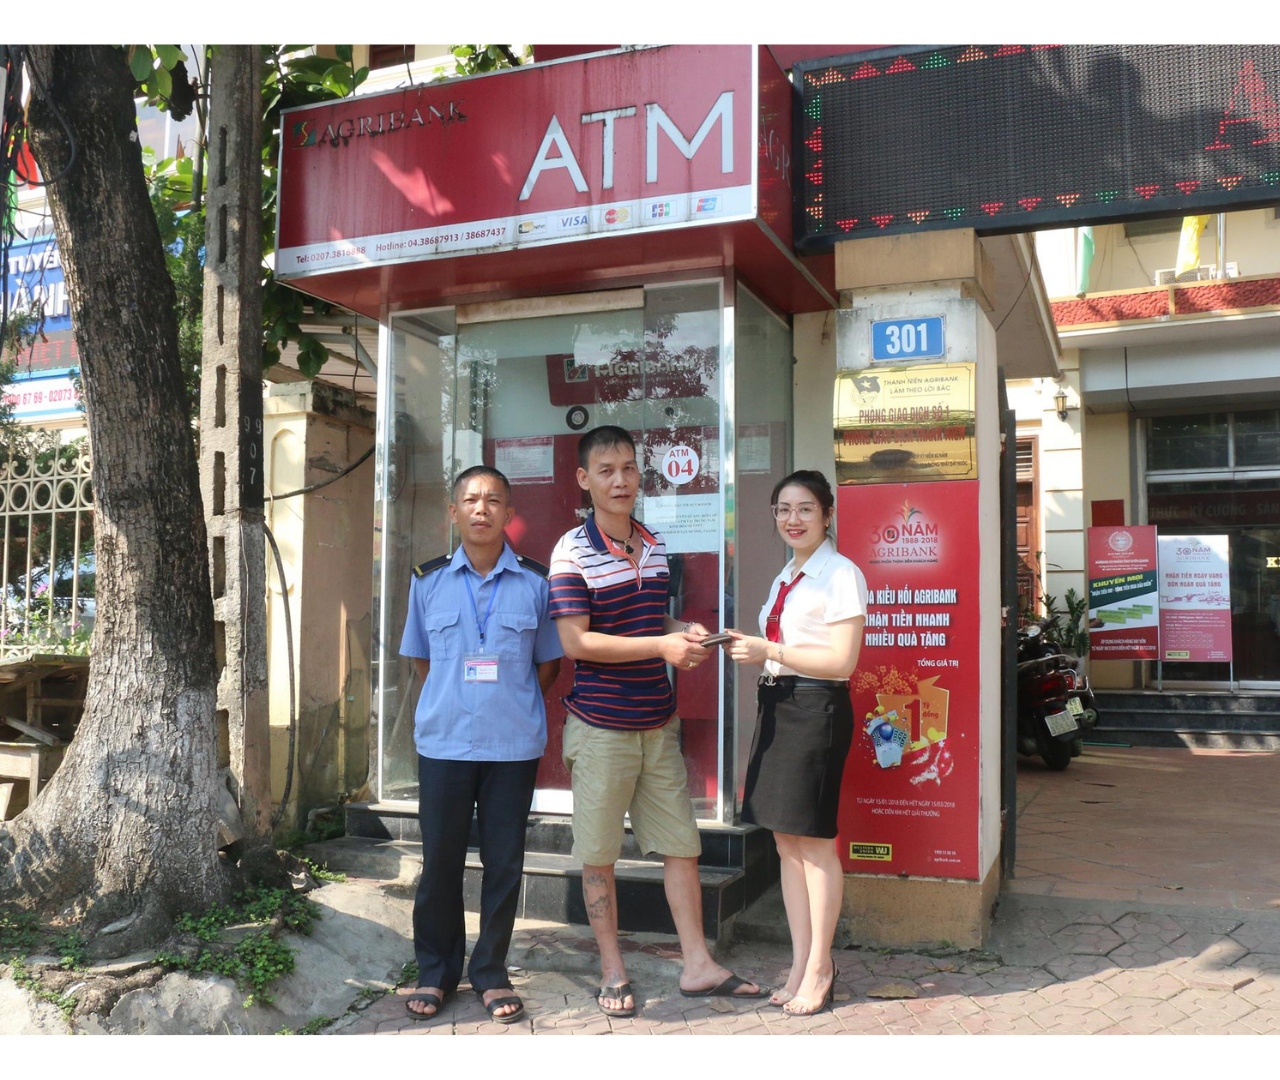 Cây atm Phan Rang: Danh sách trụ cây ATM tại Phan Rang Ninh Thuận